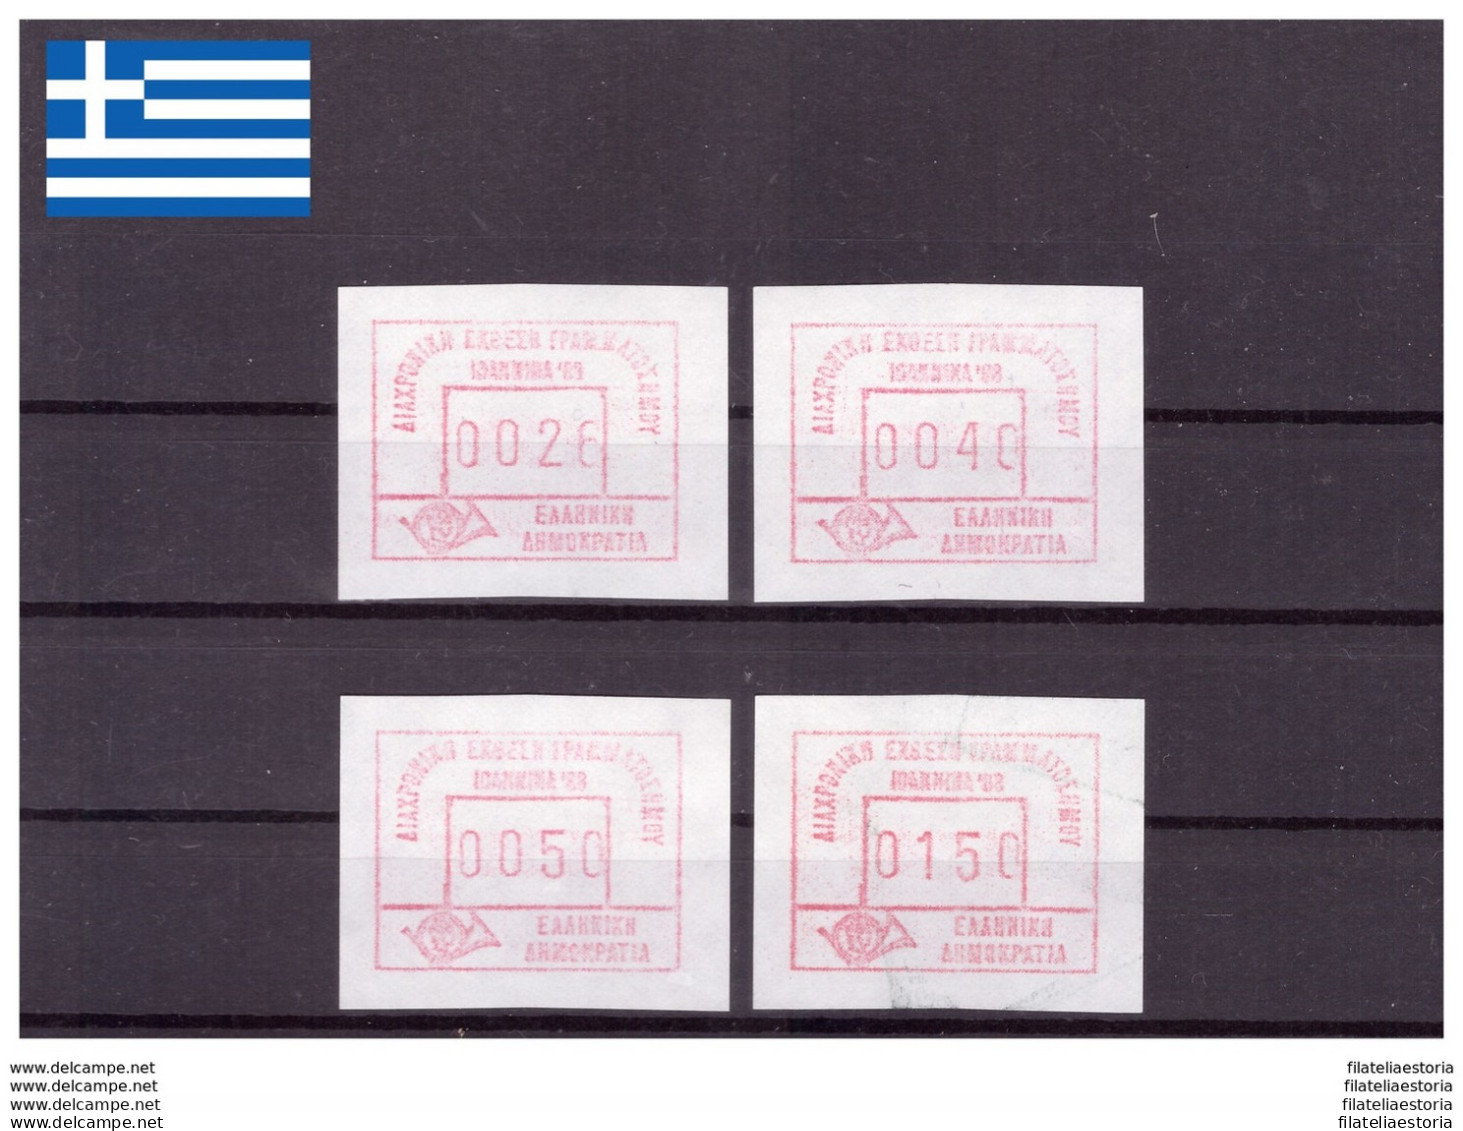 Grèce 1988 - MNH ** - Timbres Automatiques - Michel Nr. A7 X 4 (gre784) - Marcophilie - EMA (Empreintes Machines)